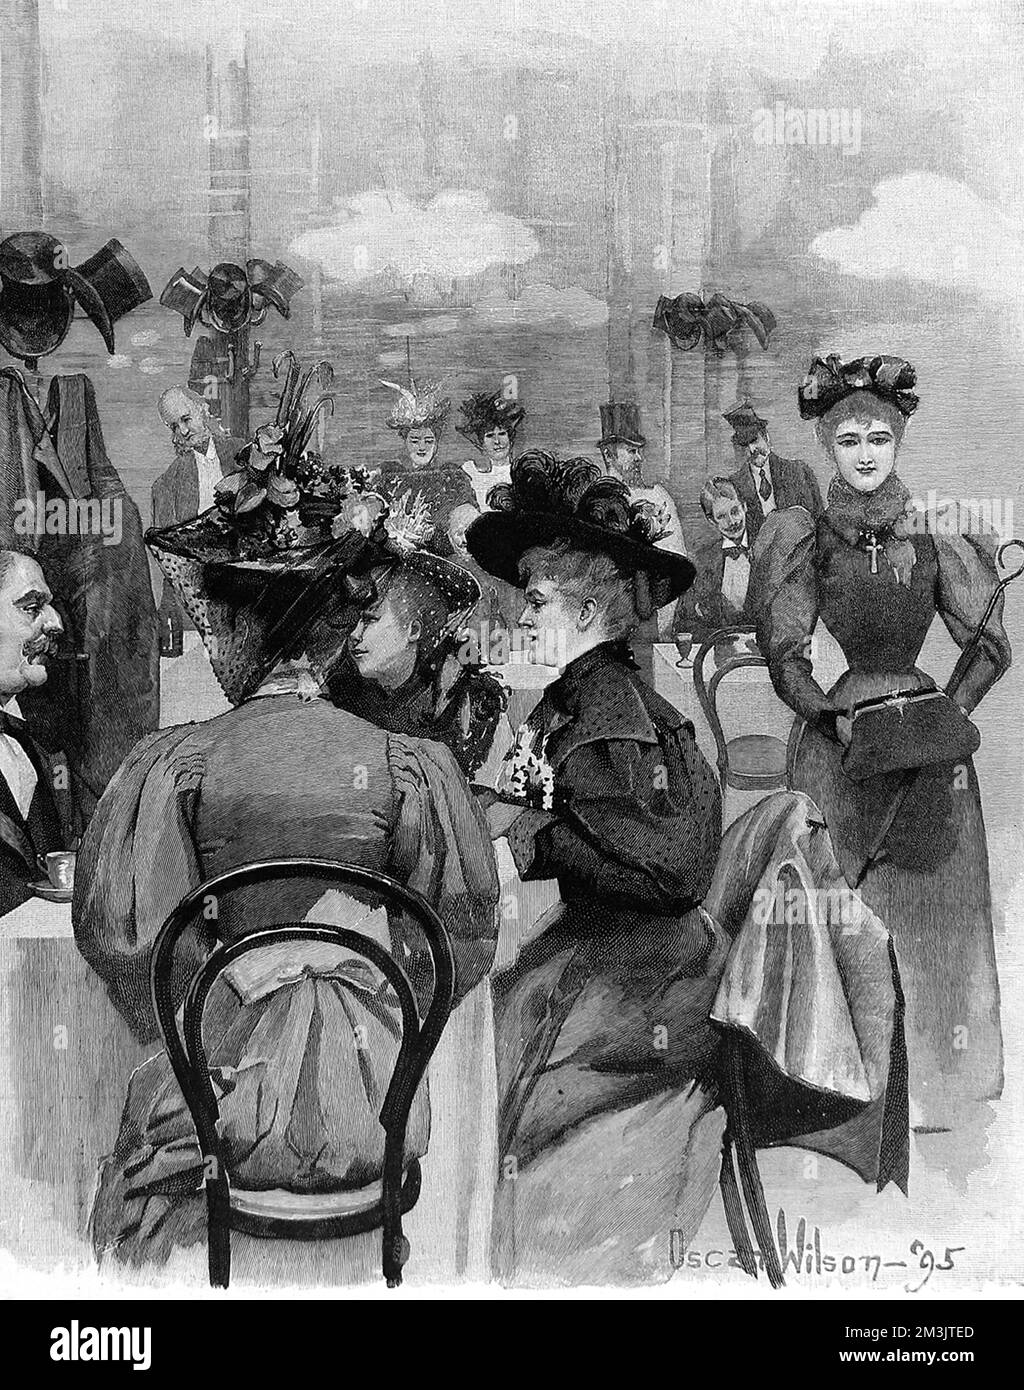 Ein nicht identifiziertes Londoner Restaurant in1895, das modische Gäste an Tischen zeigt, die auf einen Sitzplatz warten. Hüte und Mäntel hängen an Haken an der Wand, während die Damen ihre raffinierten Hüte, die um die Jahrhundertwende beliebt waren, auf ihren Köpfen tragen. Stockfoto